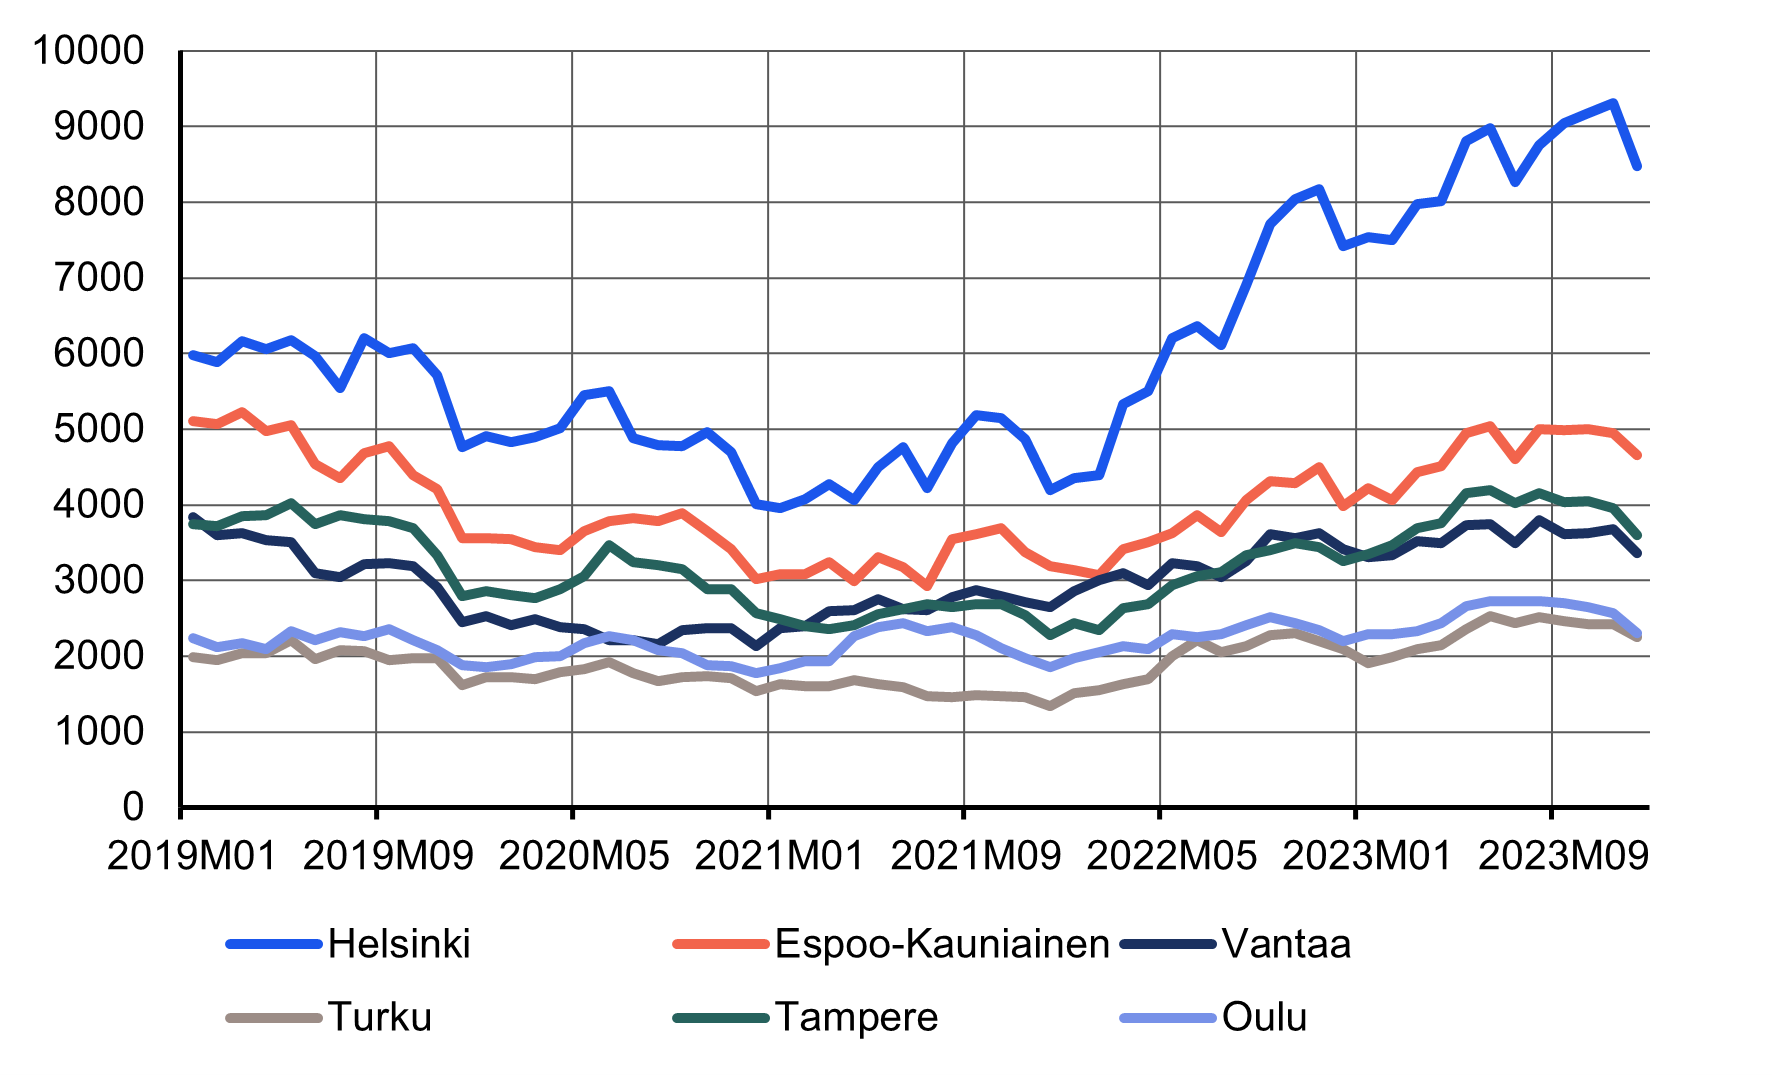 Viivakuvio myynti-ilmoitusten määristä kuudessa suurimmassa kaupungissa vuosina 2019-2023. Suunta on ollut laskeva vuoden 2021 loppuun asti, mutta määrät ovat kääntyneet jälleen nousuun vuonna 2022. Myynti-ilmoitusmäärät ovat kasvaneet eniten Helsingissä.